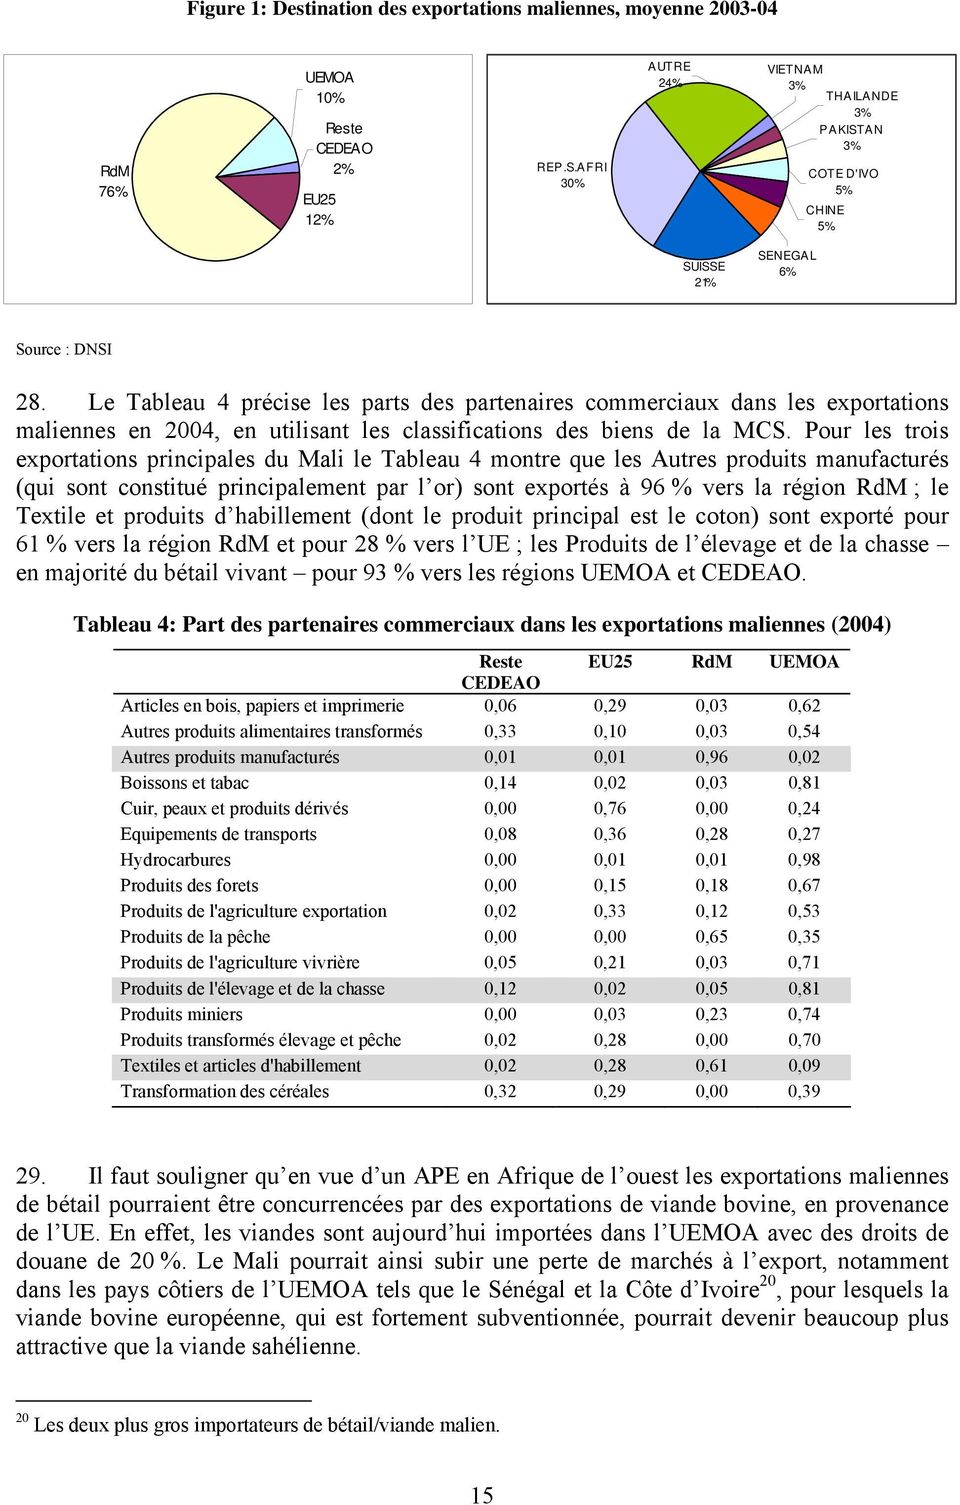 Le Tableau 4 précise les parts des partenaires commerciaux dans les exportations maliennes en 2004, en utilisant les classifications des biens de la MCS.